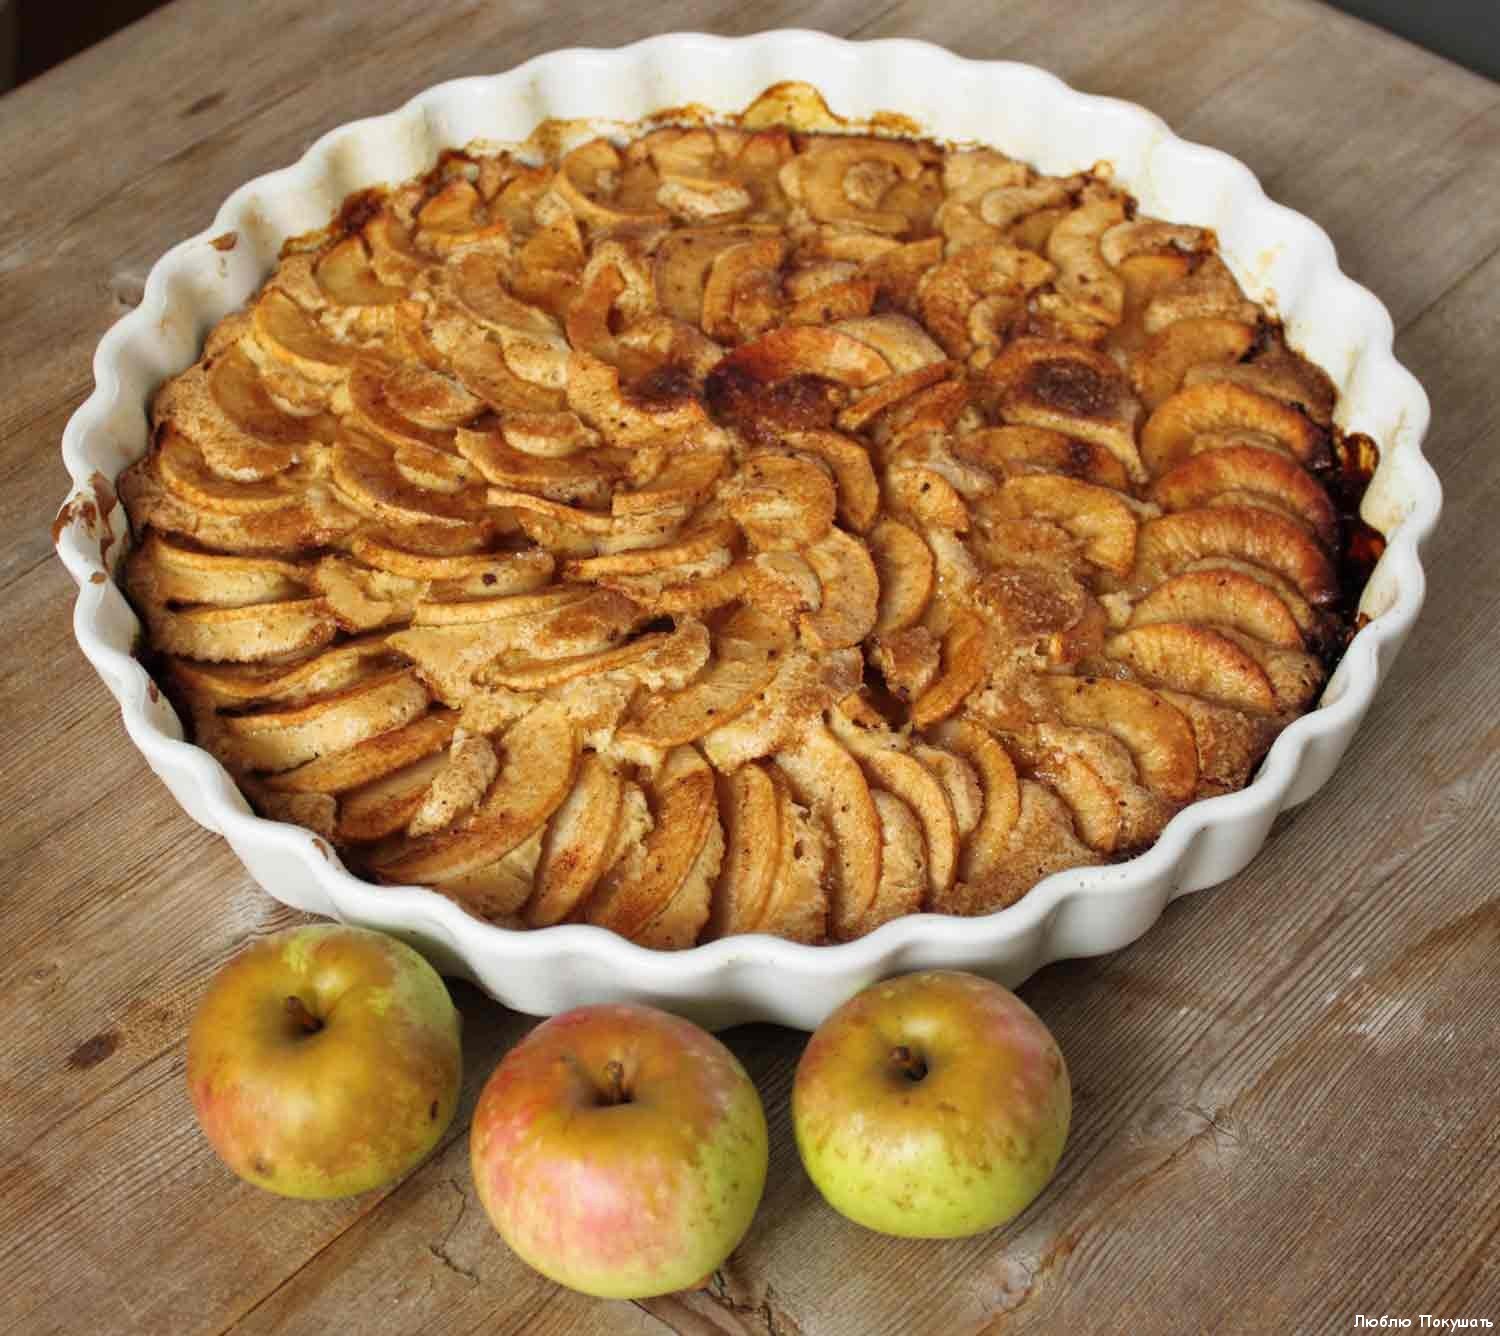 Вкуснейший яблочный пирог простейший рецепт. Шарлот яблочный. Шарлотка с яблоками. Домашний яблочный пирог. Шарлотка пышная с яблоками.